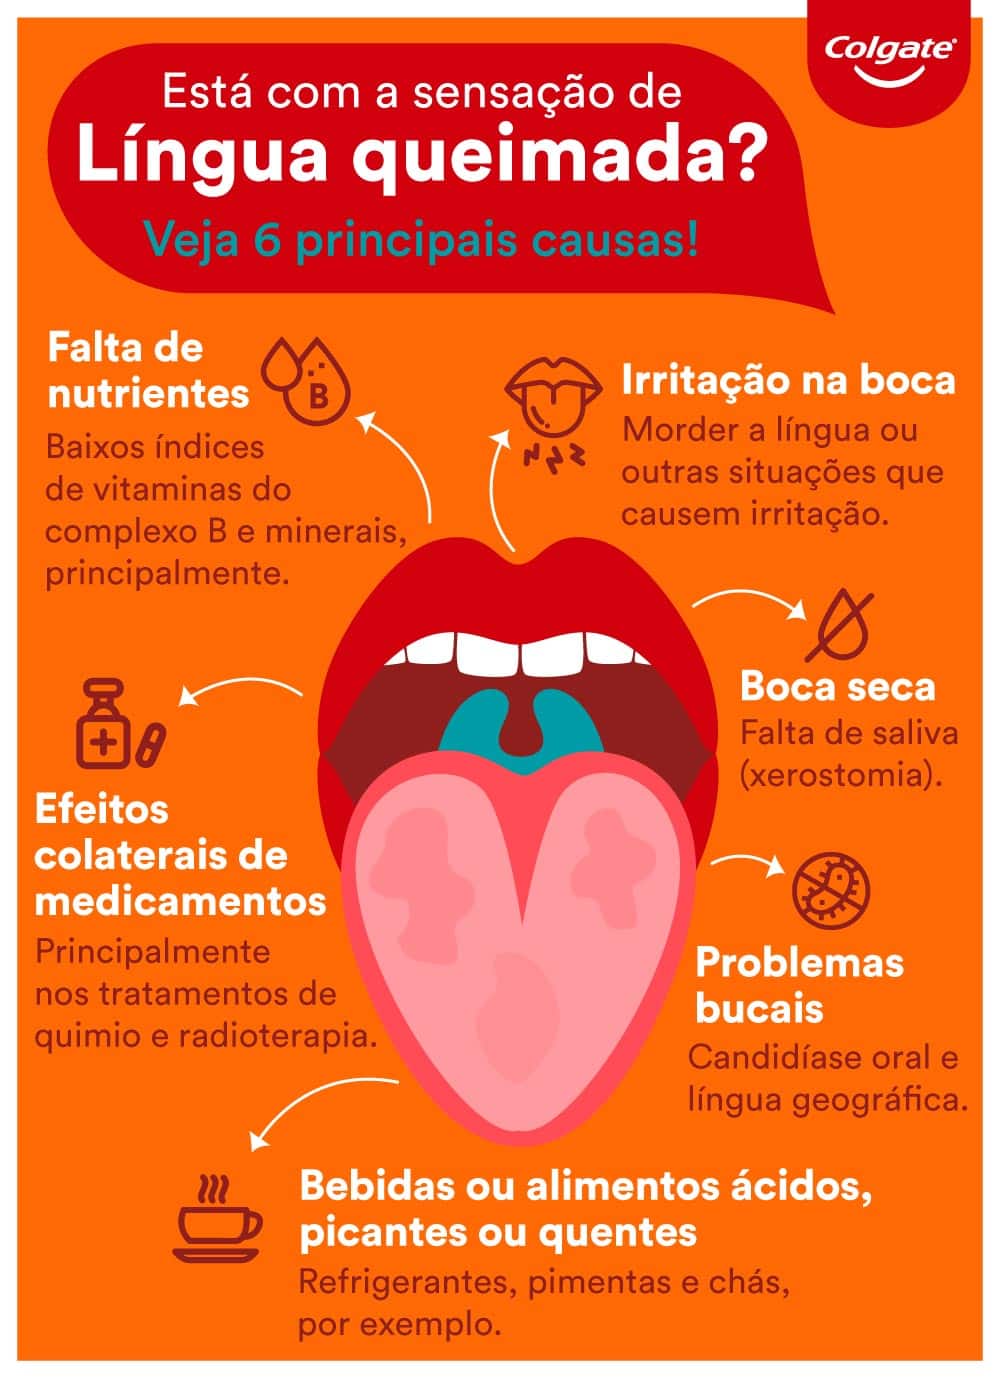 Infográfico sobre sensação de língua queimada: quais as principais causas